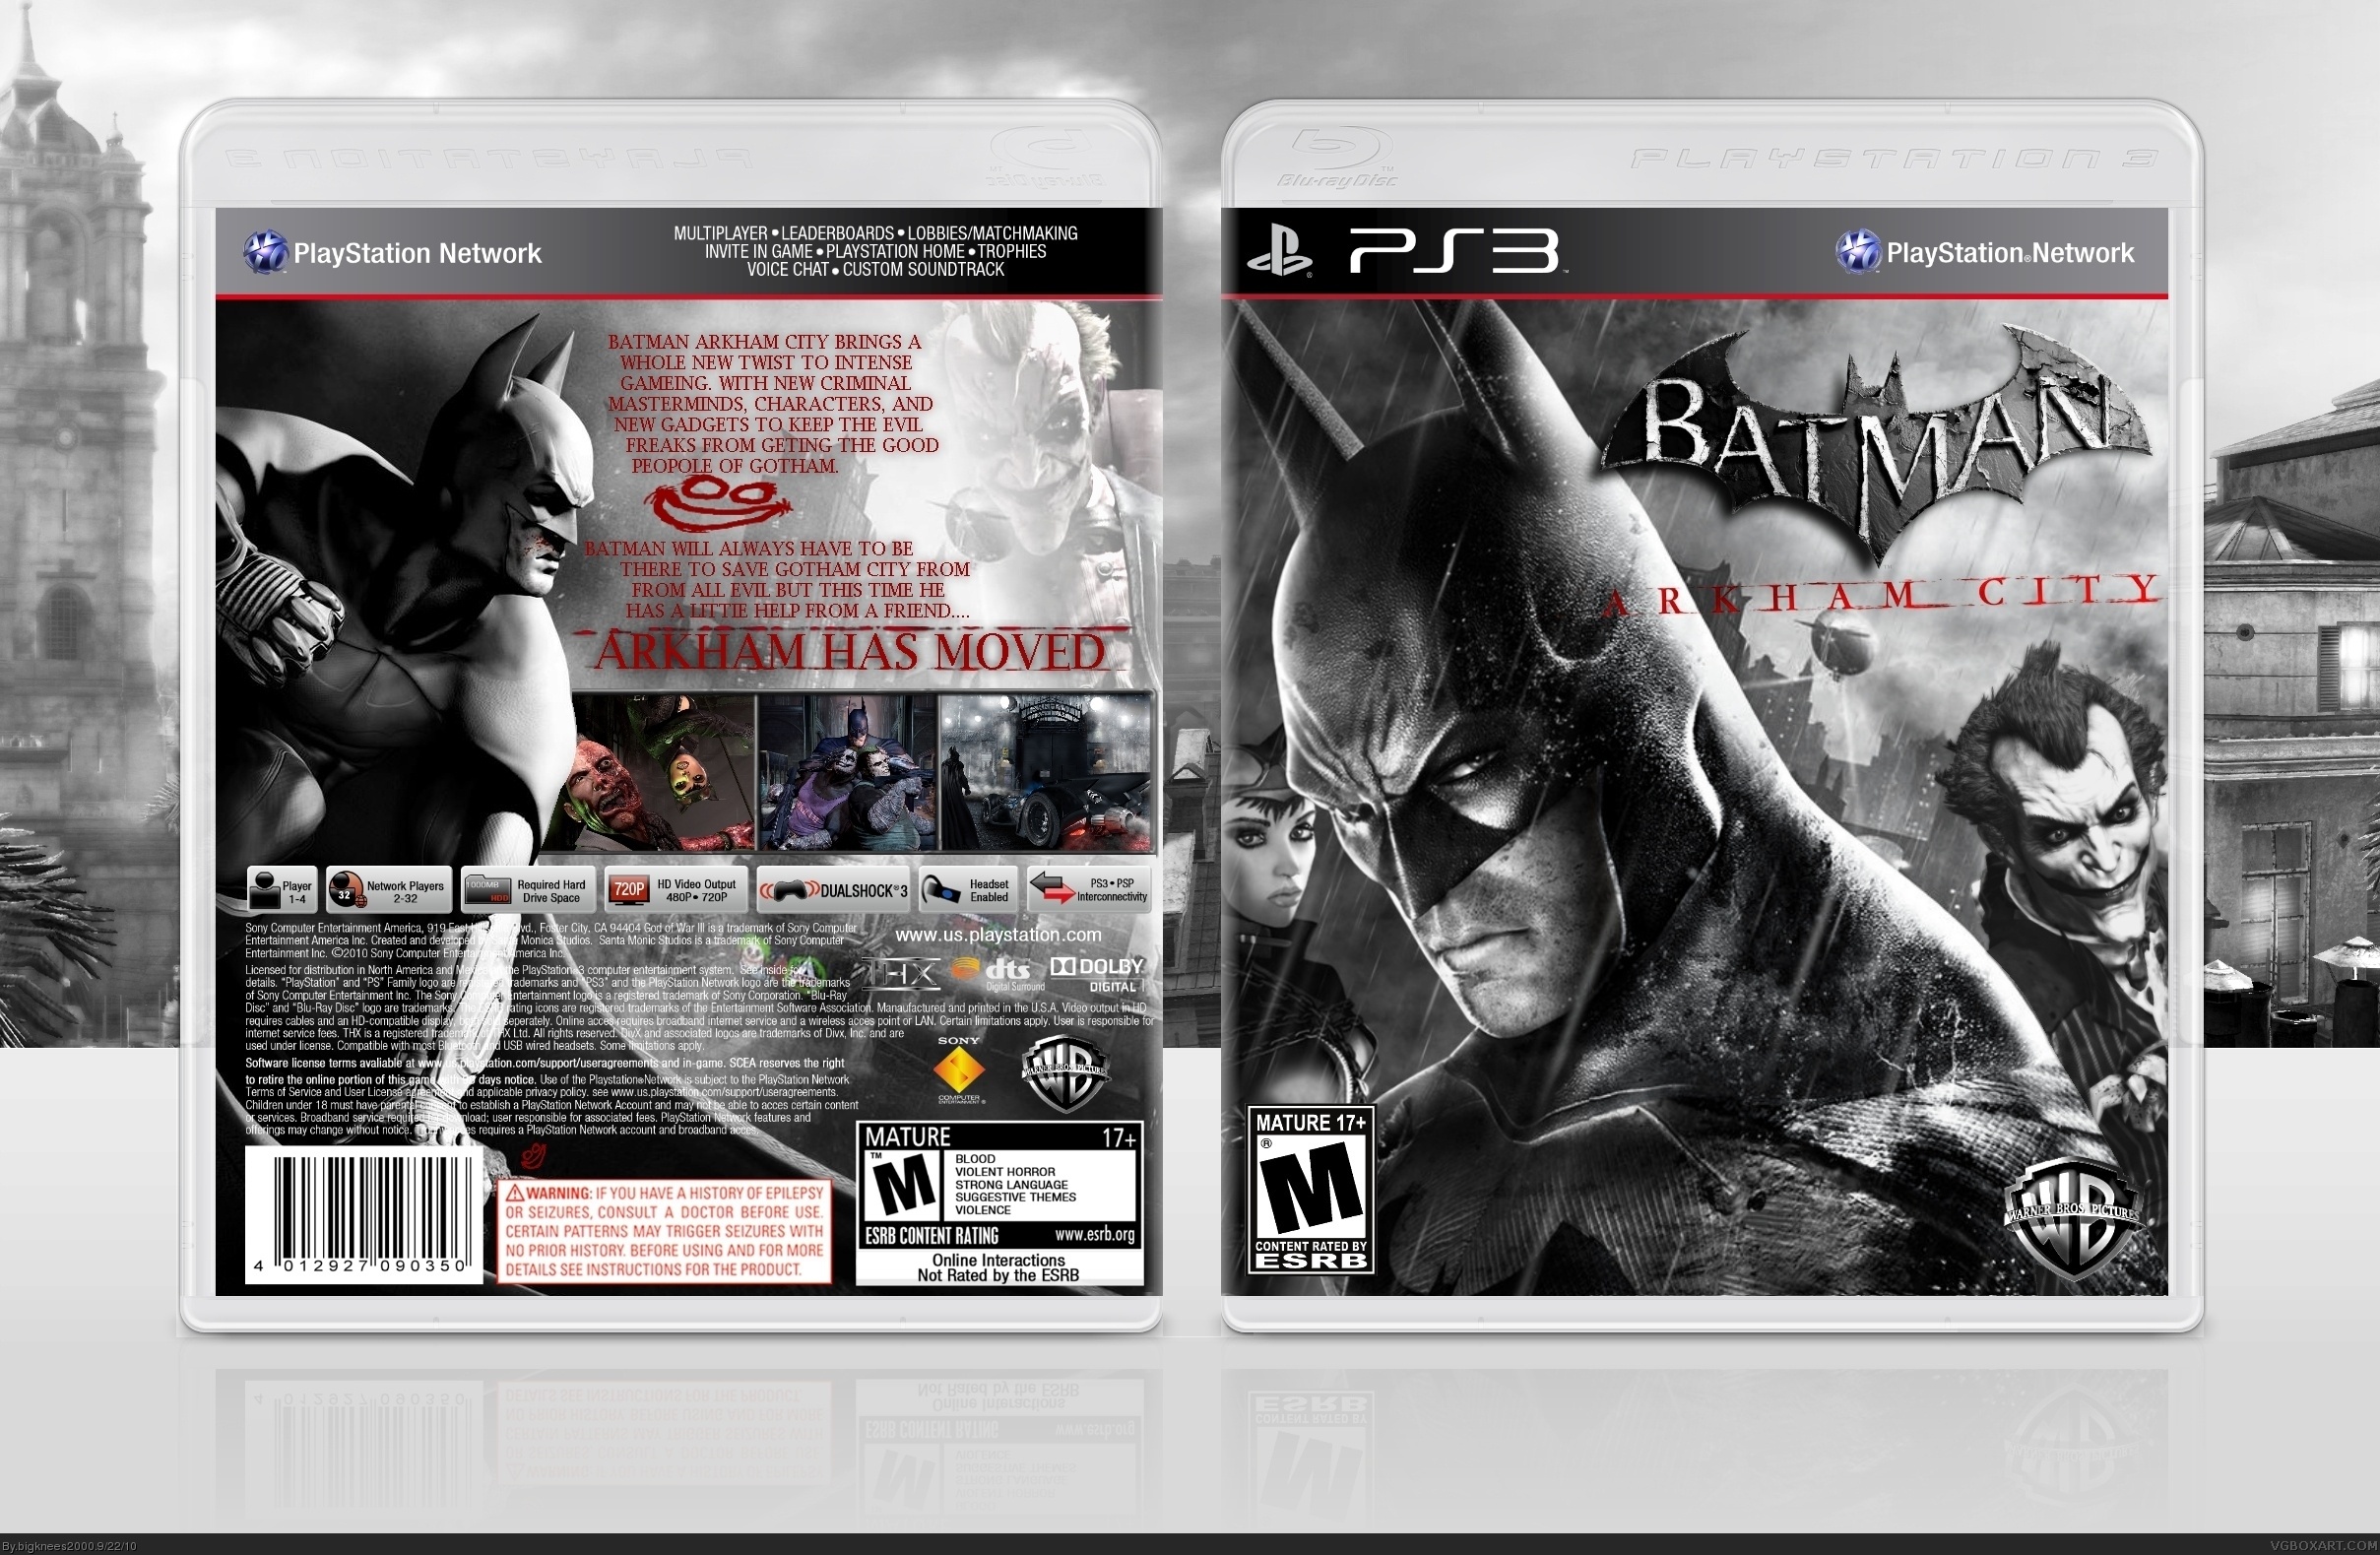 Batman:Arkham City PS3 box cover